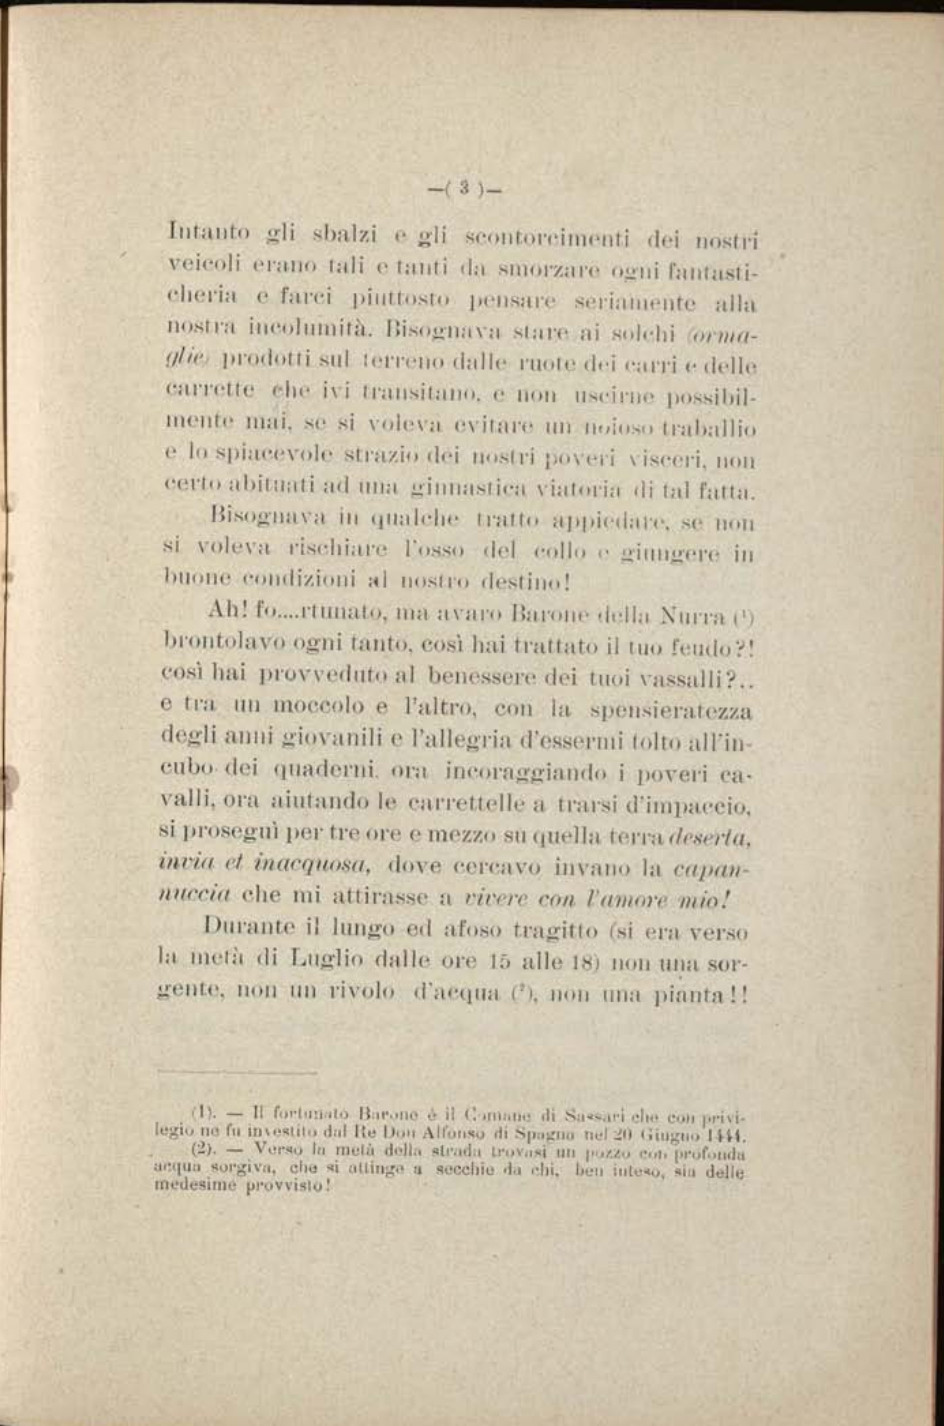 Piero Sechi - Due mesi nella Nurra 1914